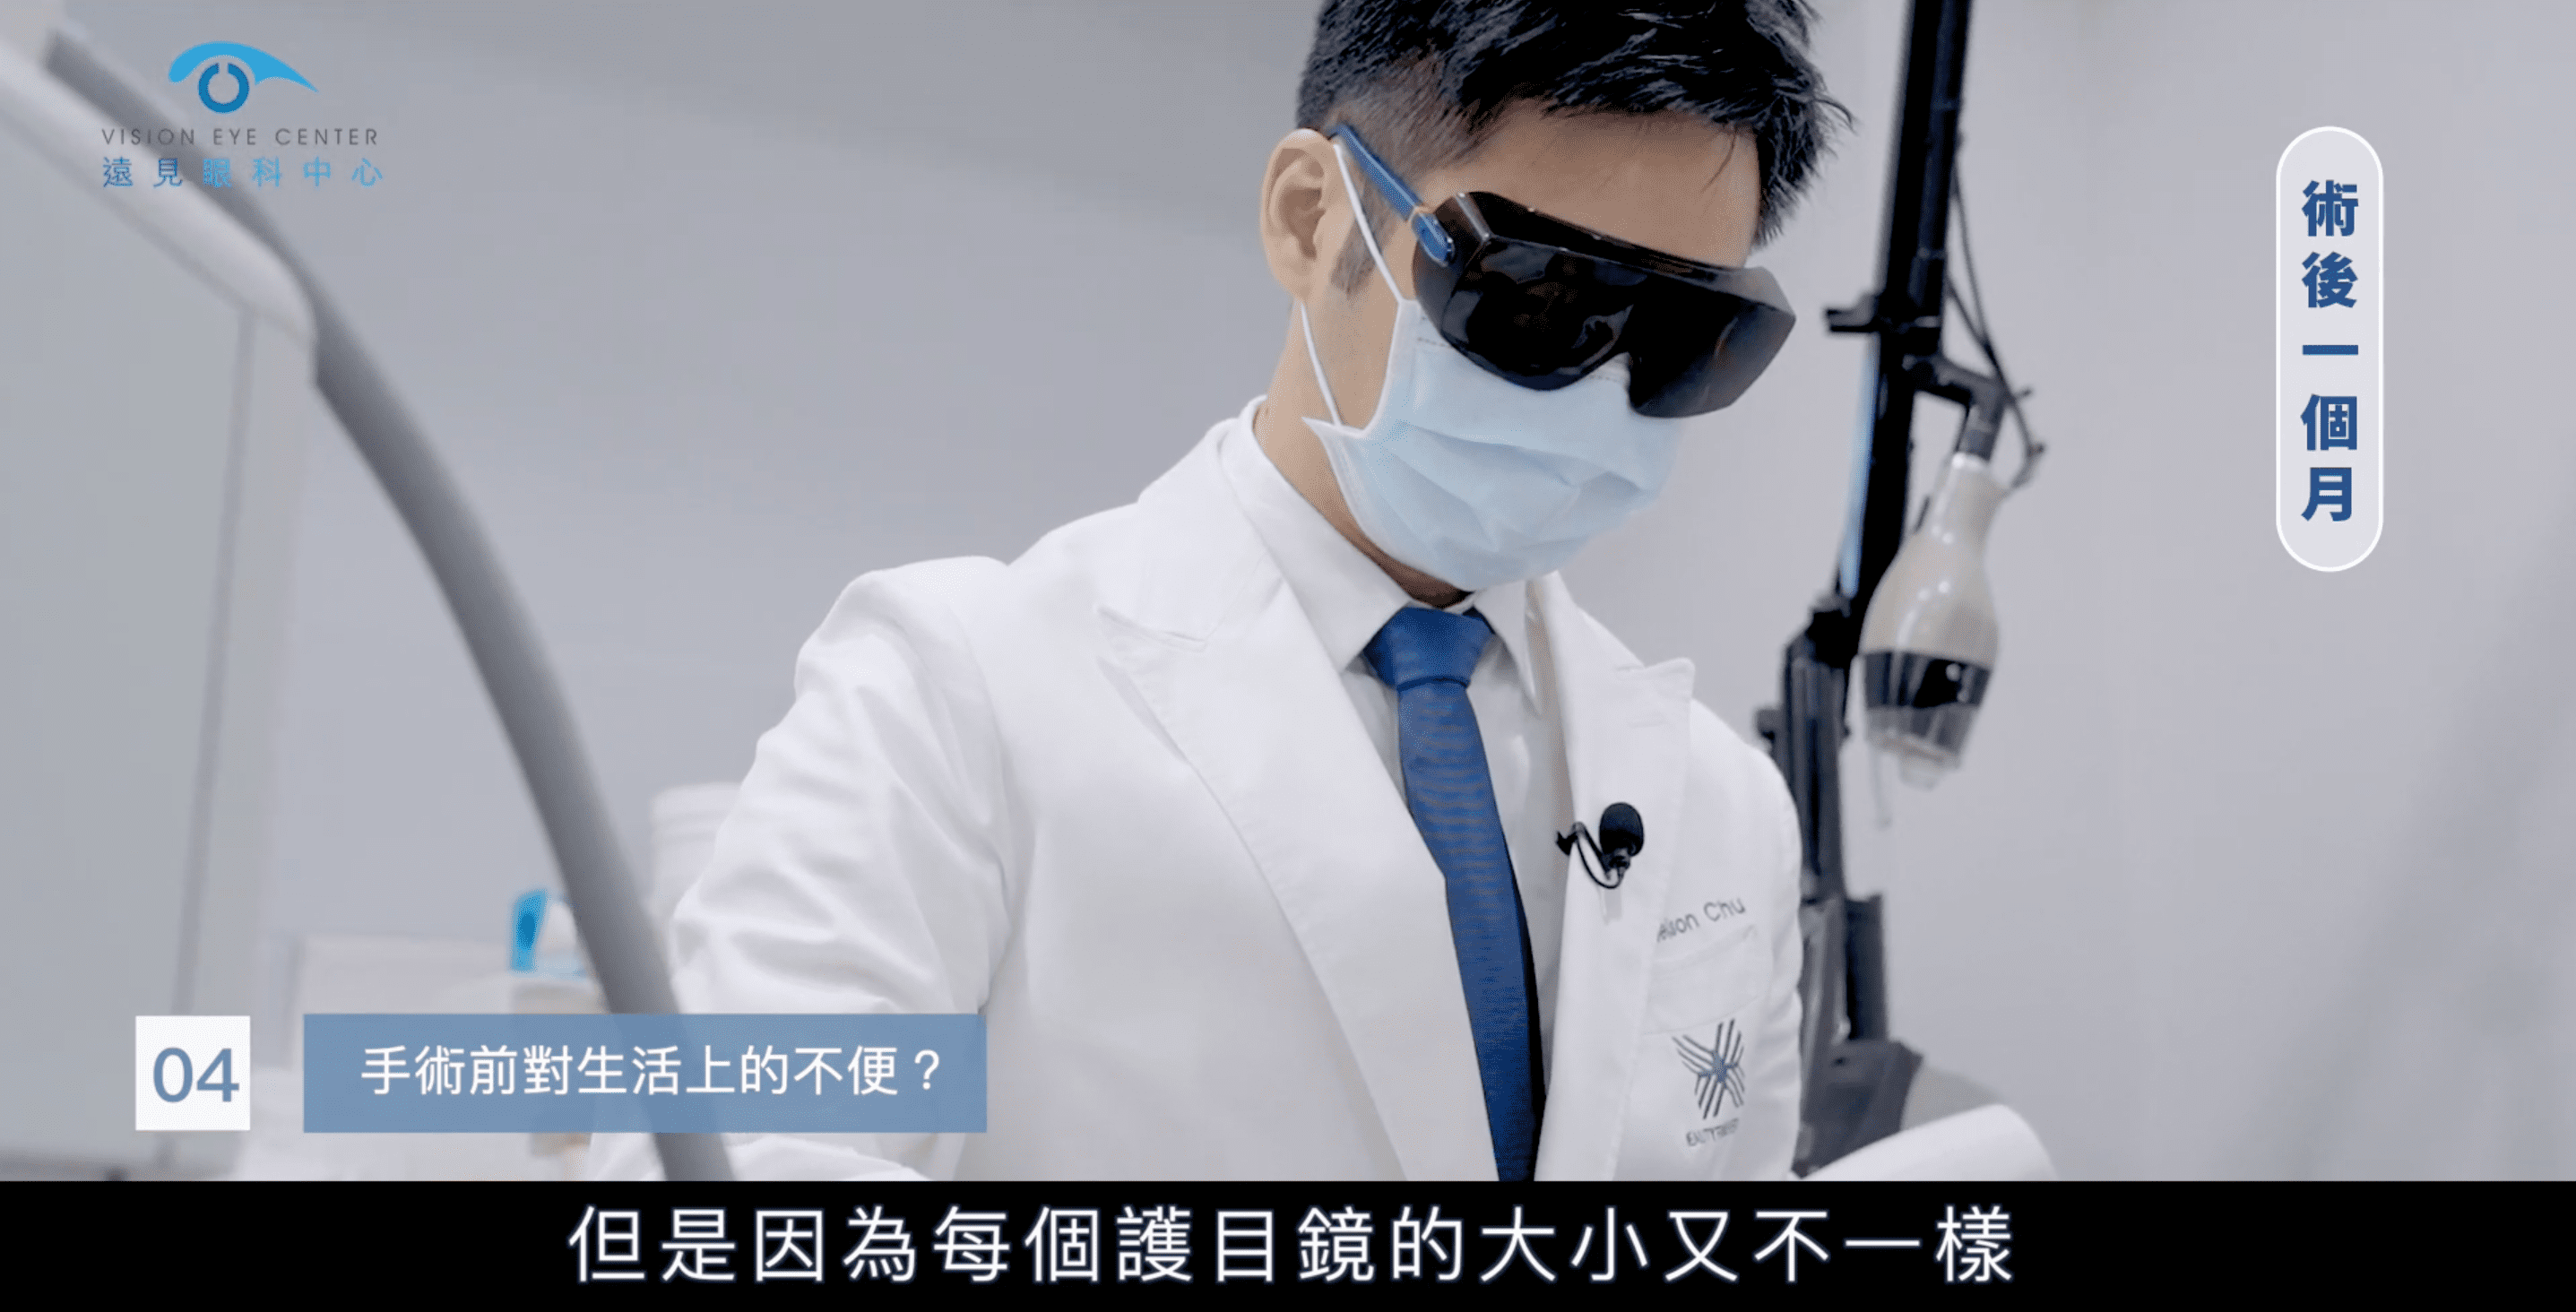 朱芃年醫師於近視雷射術前進行醫美診療的不便